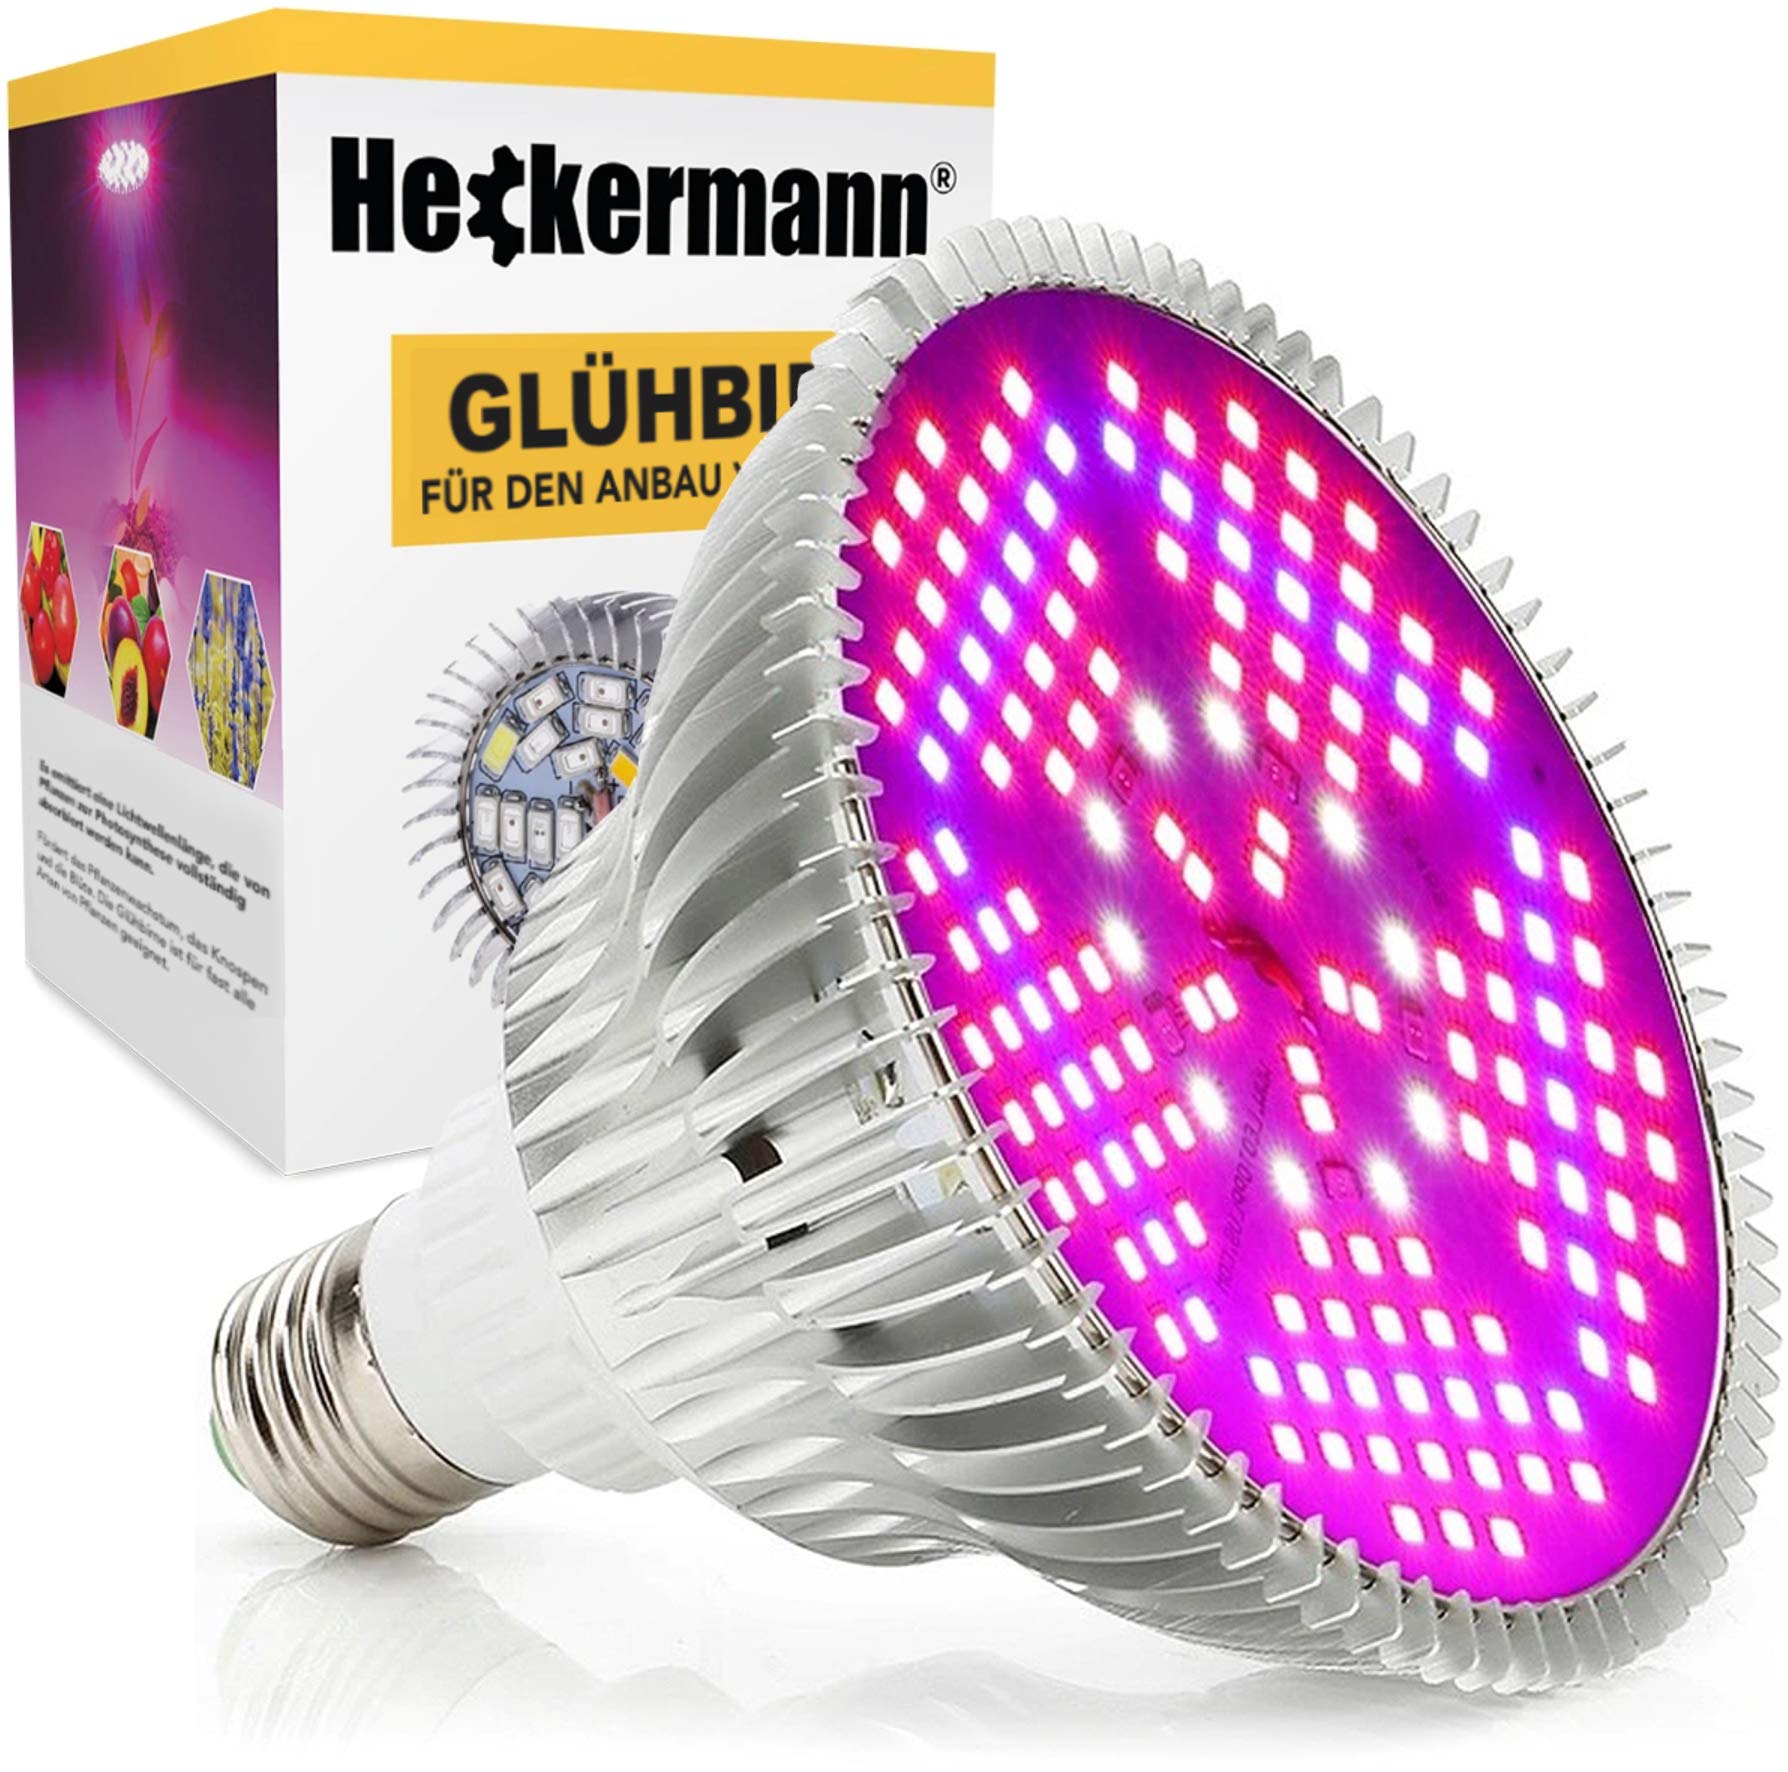 Cronos ORIGINAL Heckermann E27 Glühbirne für Pflanzen 100W – Modell: MDA-PG01 - Lichtleistung: 100W - 150 eingebaute LEDs – ideal für den Anbau von Gemüse, Kräutern, Blütenpflanzen